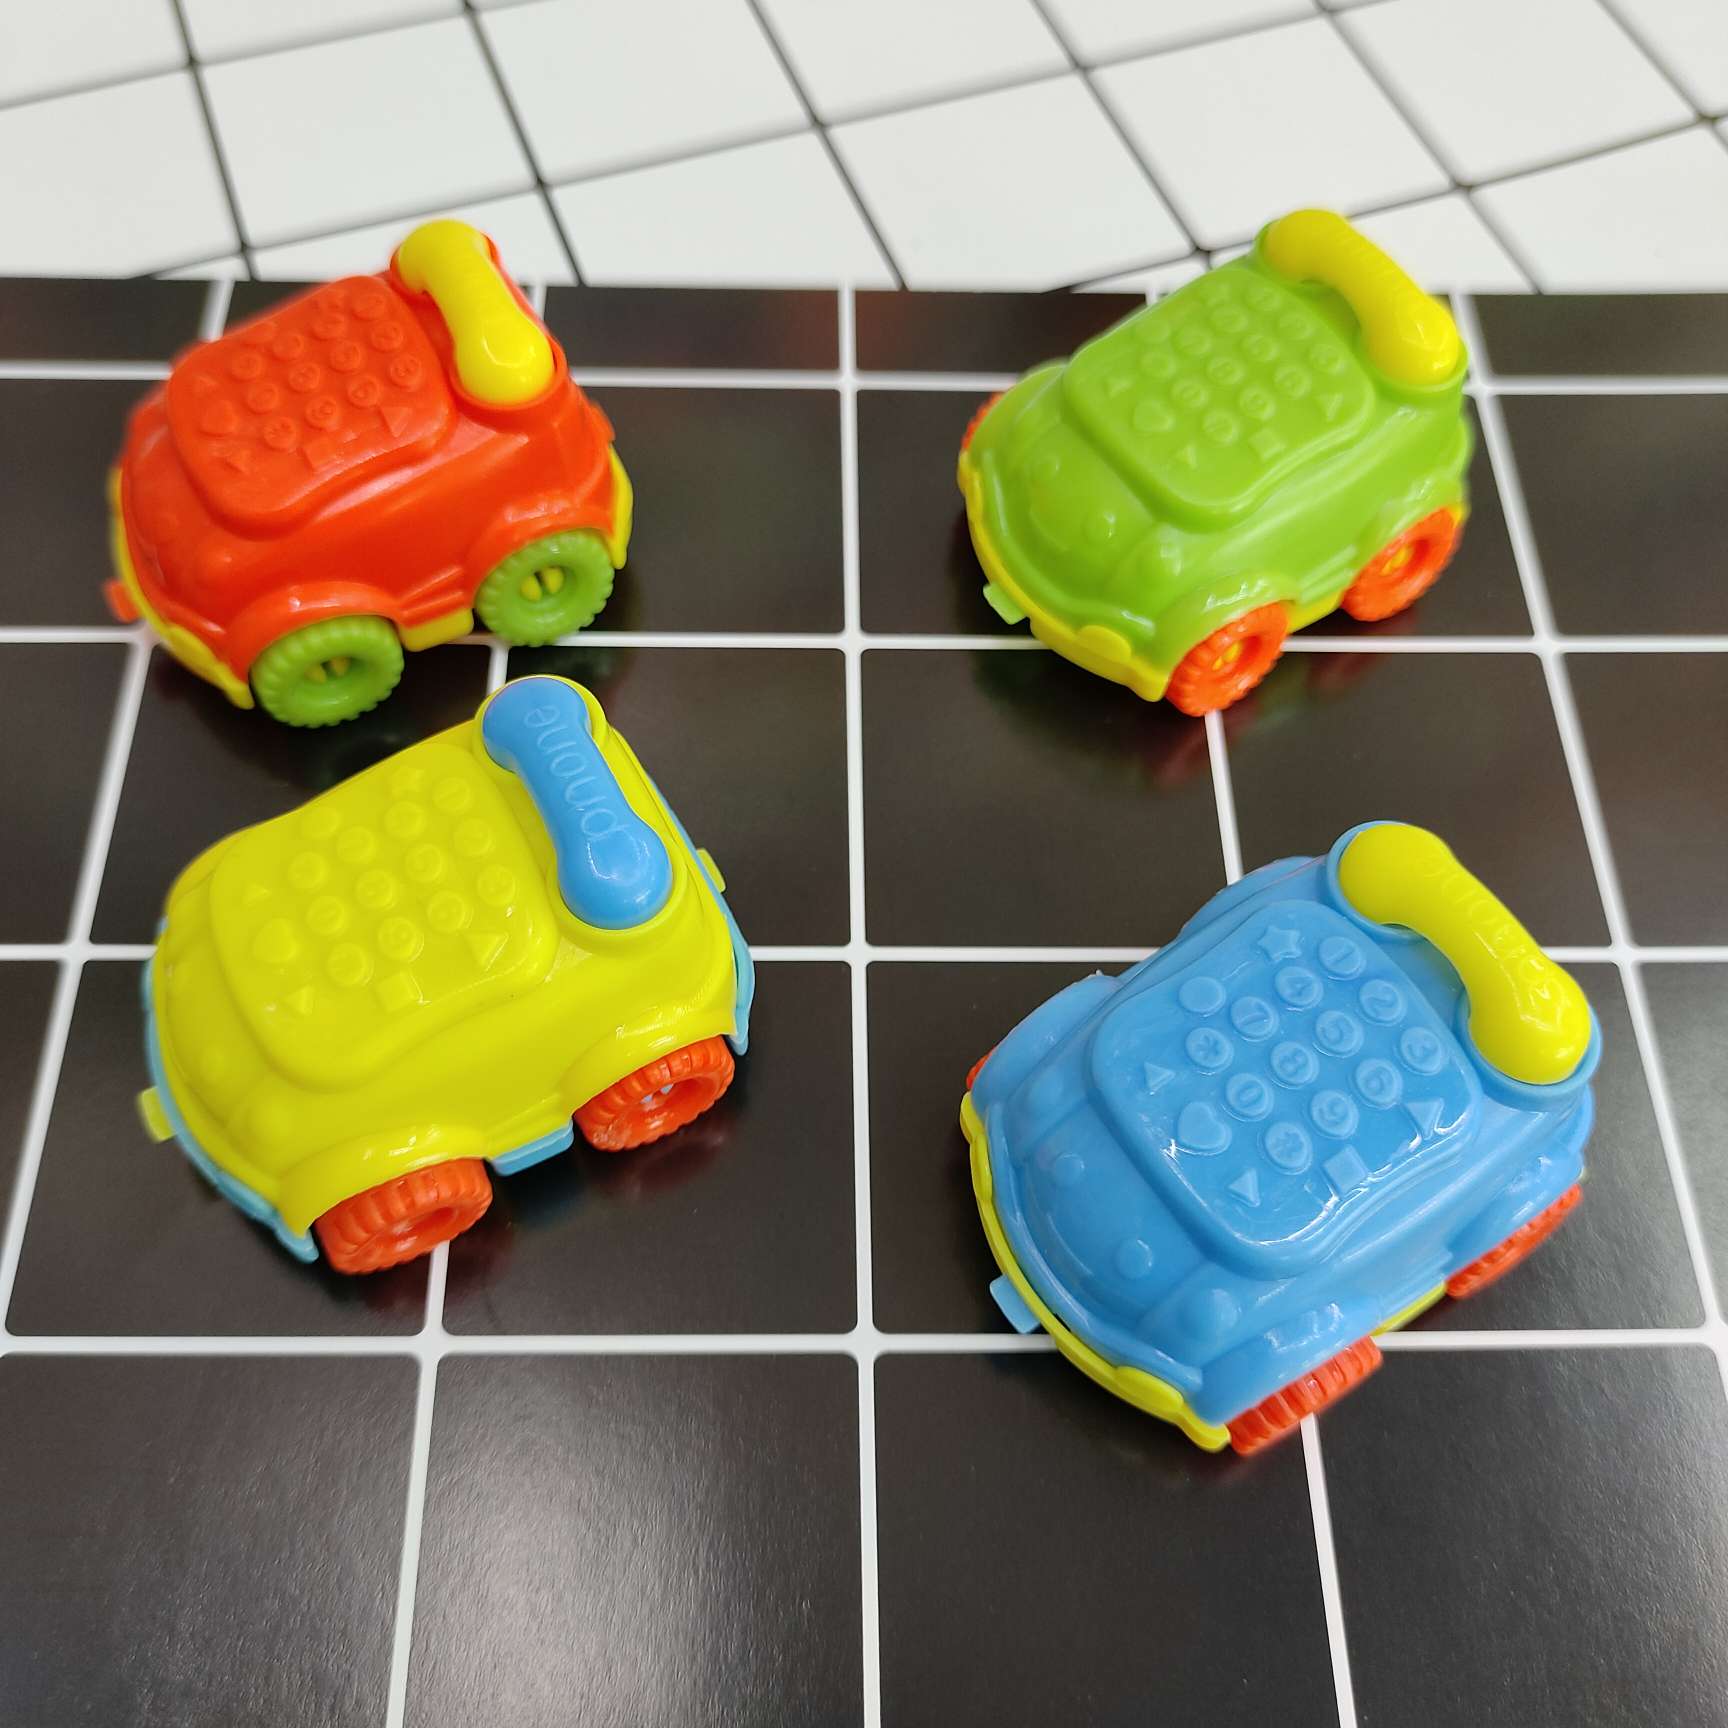 新款滑行电话车塑料玩具车混色幼儿活动运动赠品配件厂家直销热卖